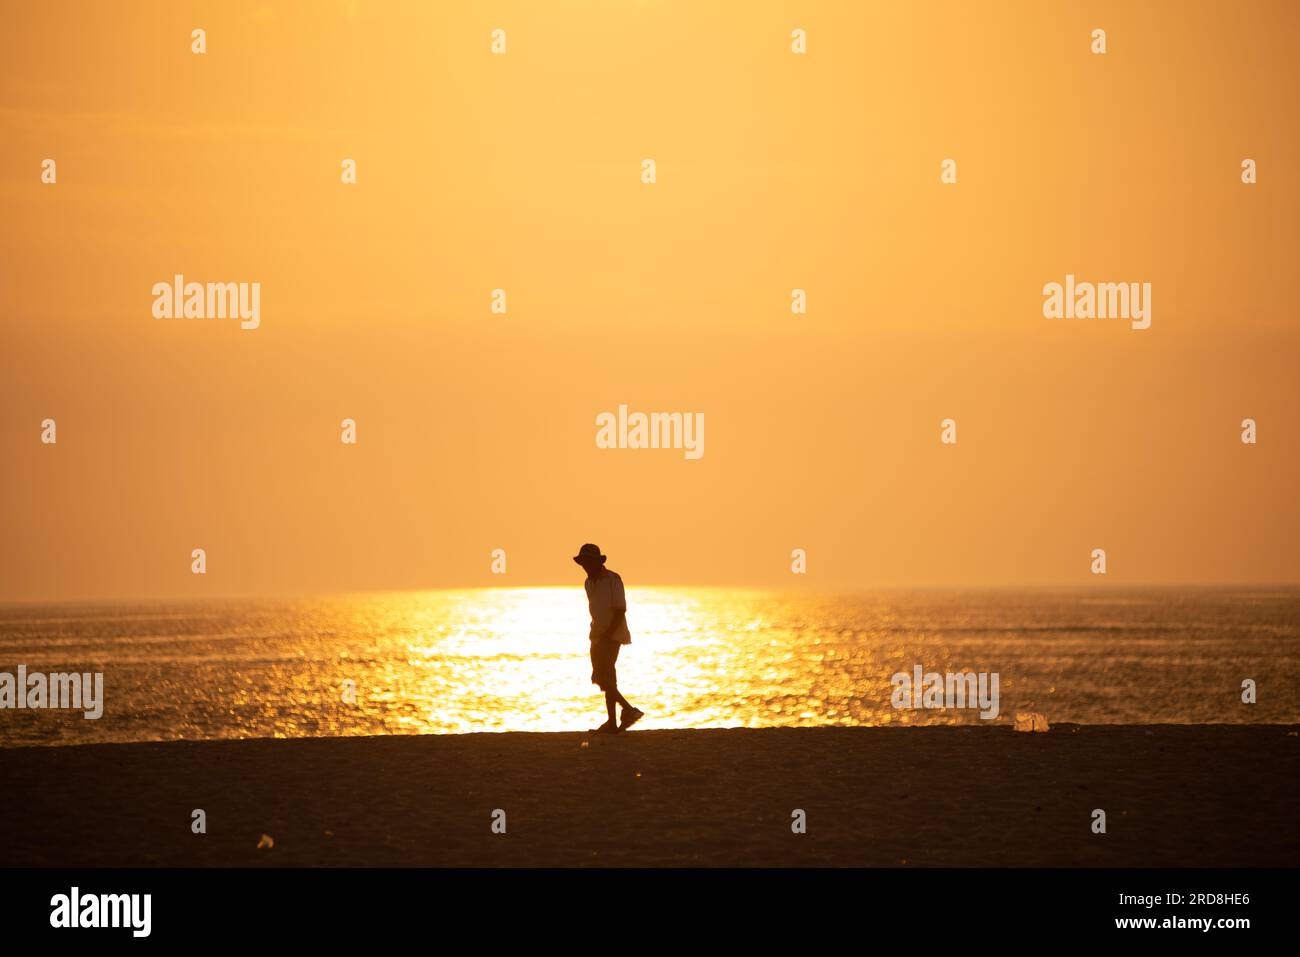 sunset Stock Photo